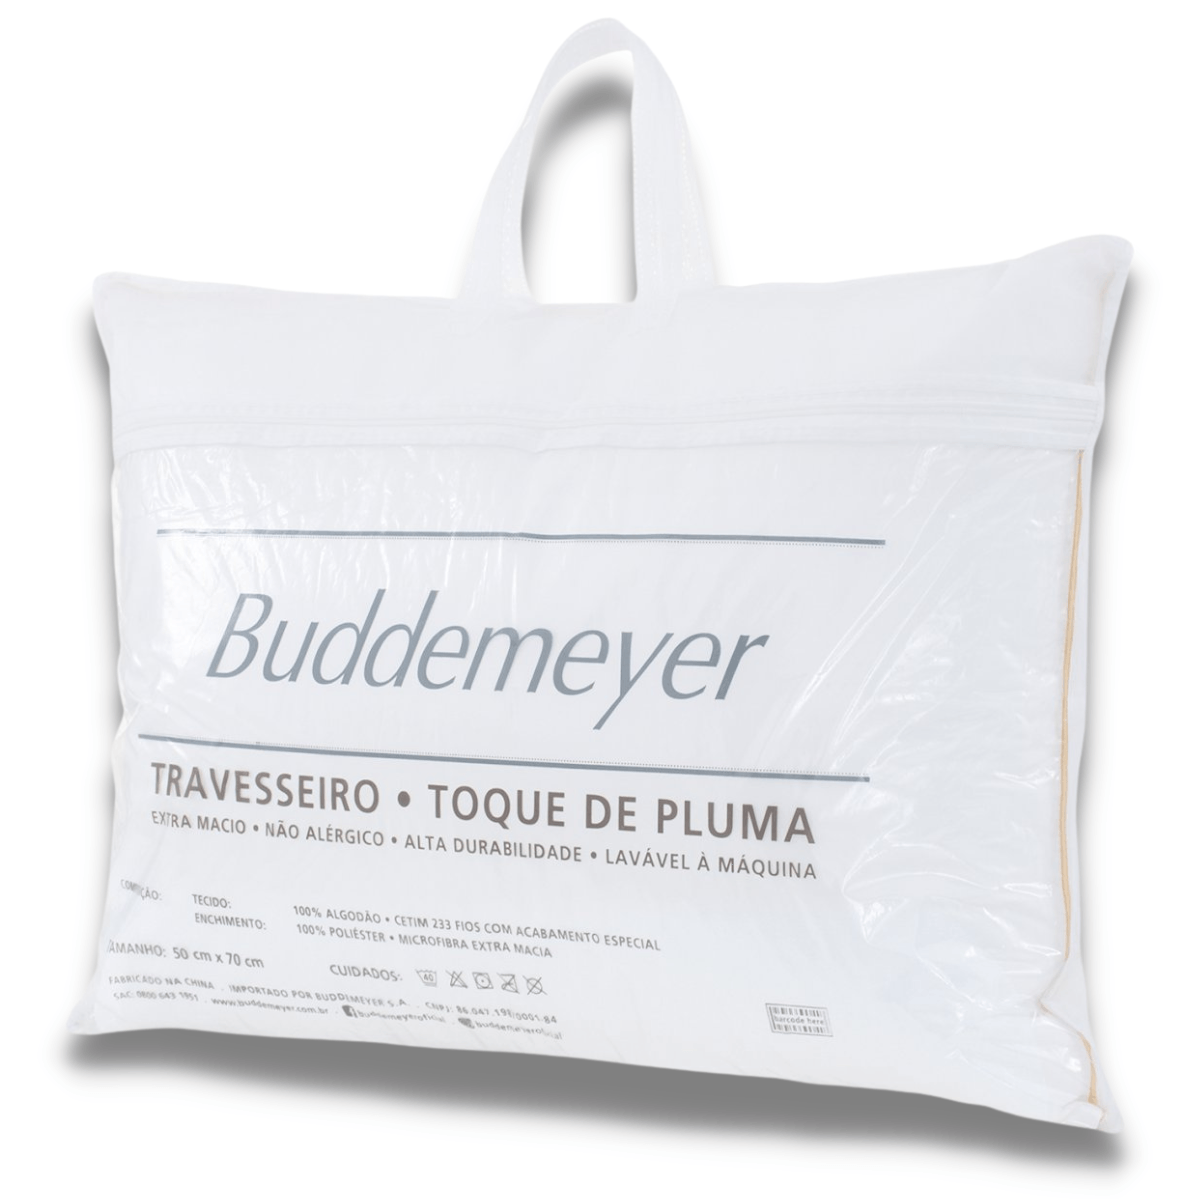 Menor preço em Travesseiro Toque De Pluma Buddemeyer 50x70cm Algodão Branco